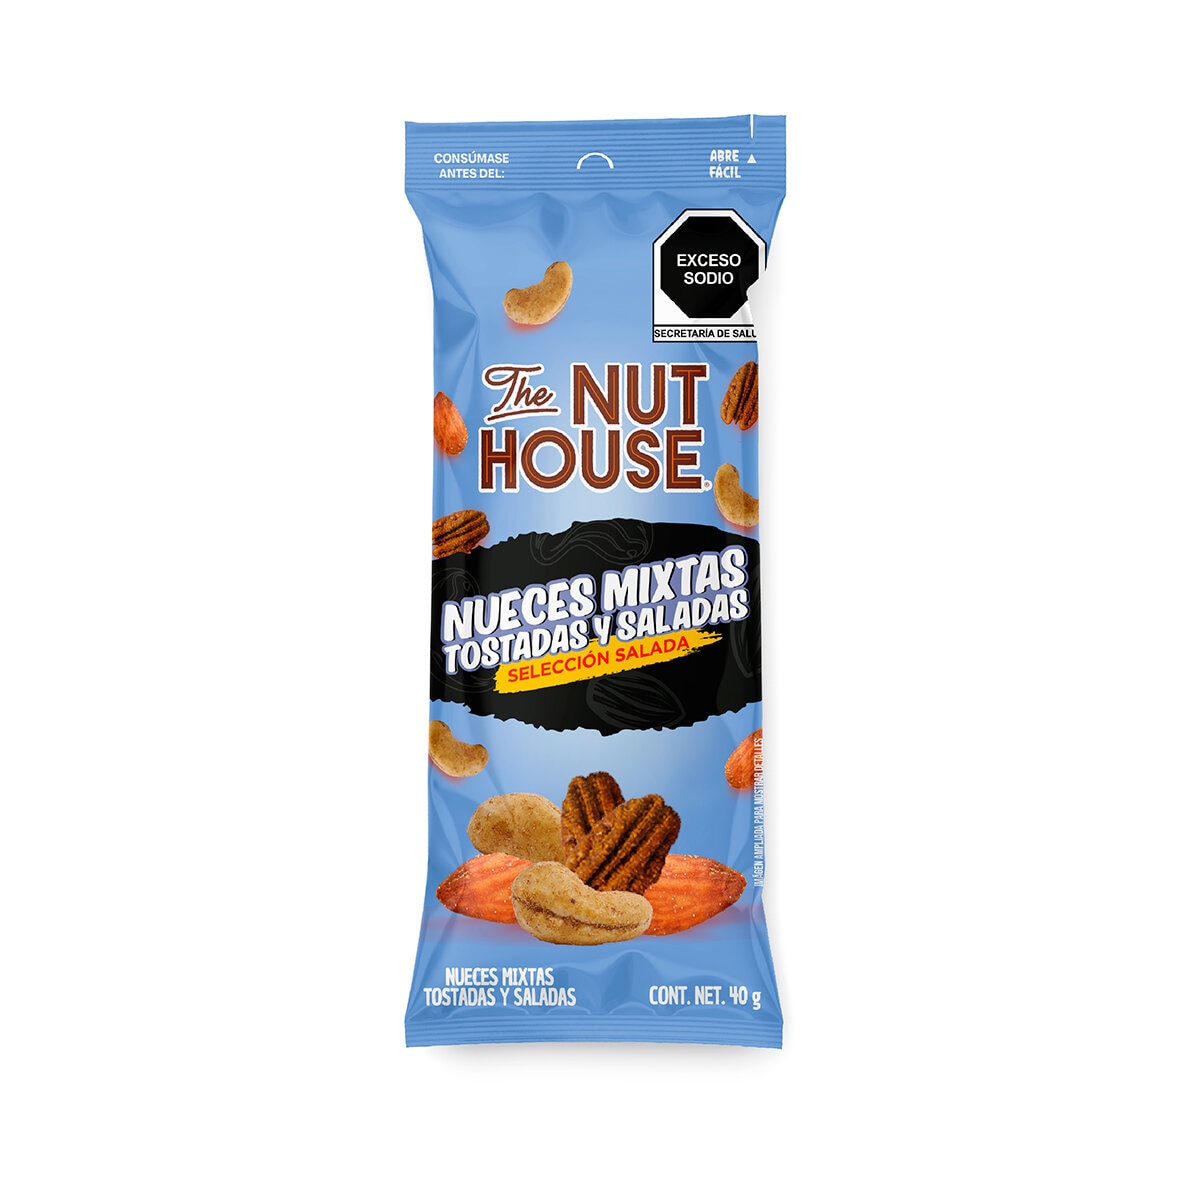 The Nut House Caja de Botanas Surtidas 20 pzas de 40 g